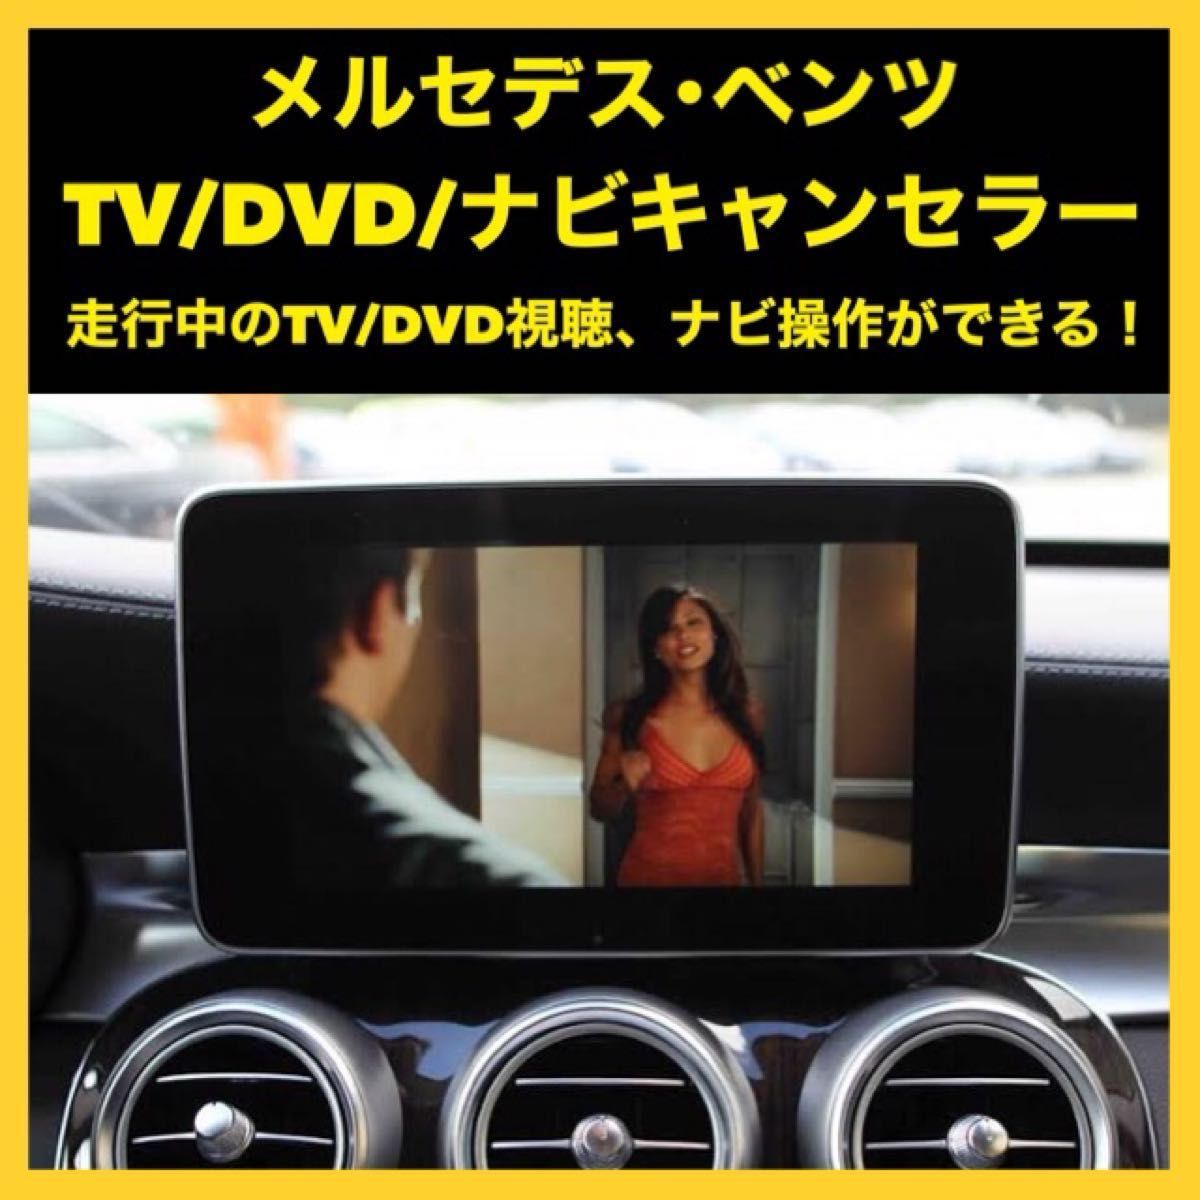 メルセデスベンツ NTG4.5/4.7用 テレビ/DVD/ナビ キャンセラーソフト TV UNLOCK DIY簡単インストール